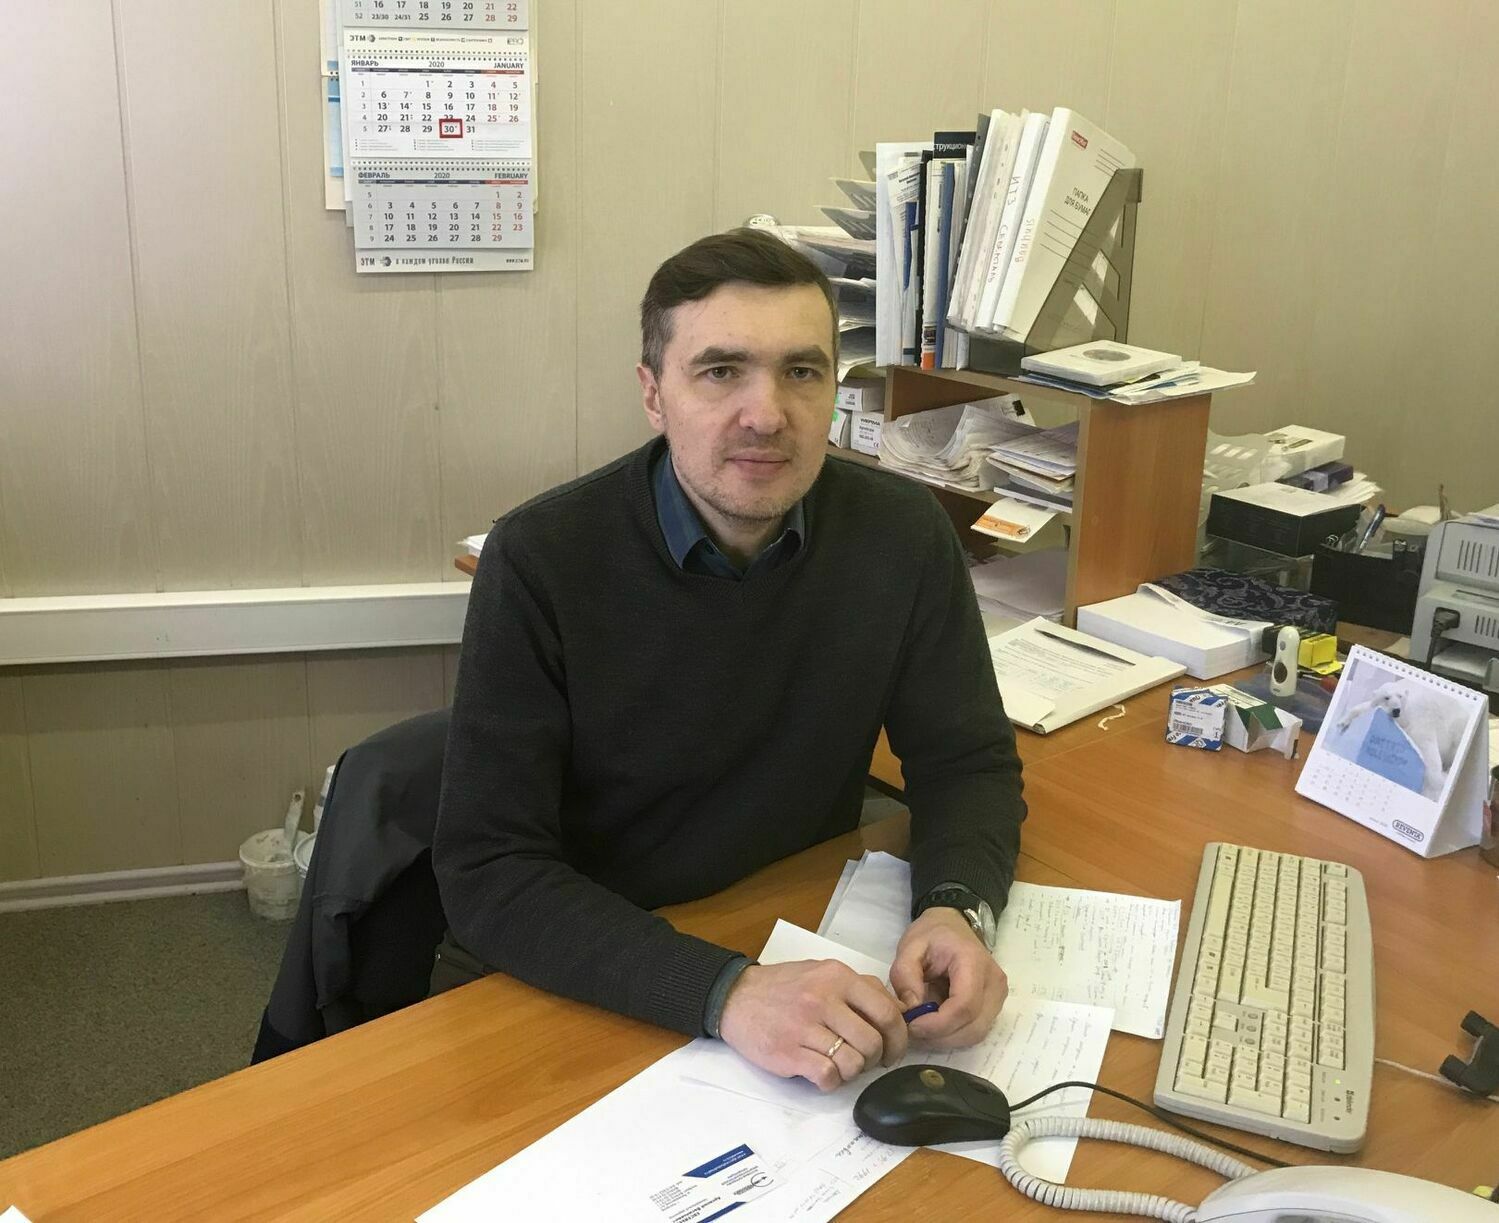 Дмитрий Колесников, Заместитель генерального директора ООО "ВИЦ" по проектам.